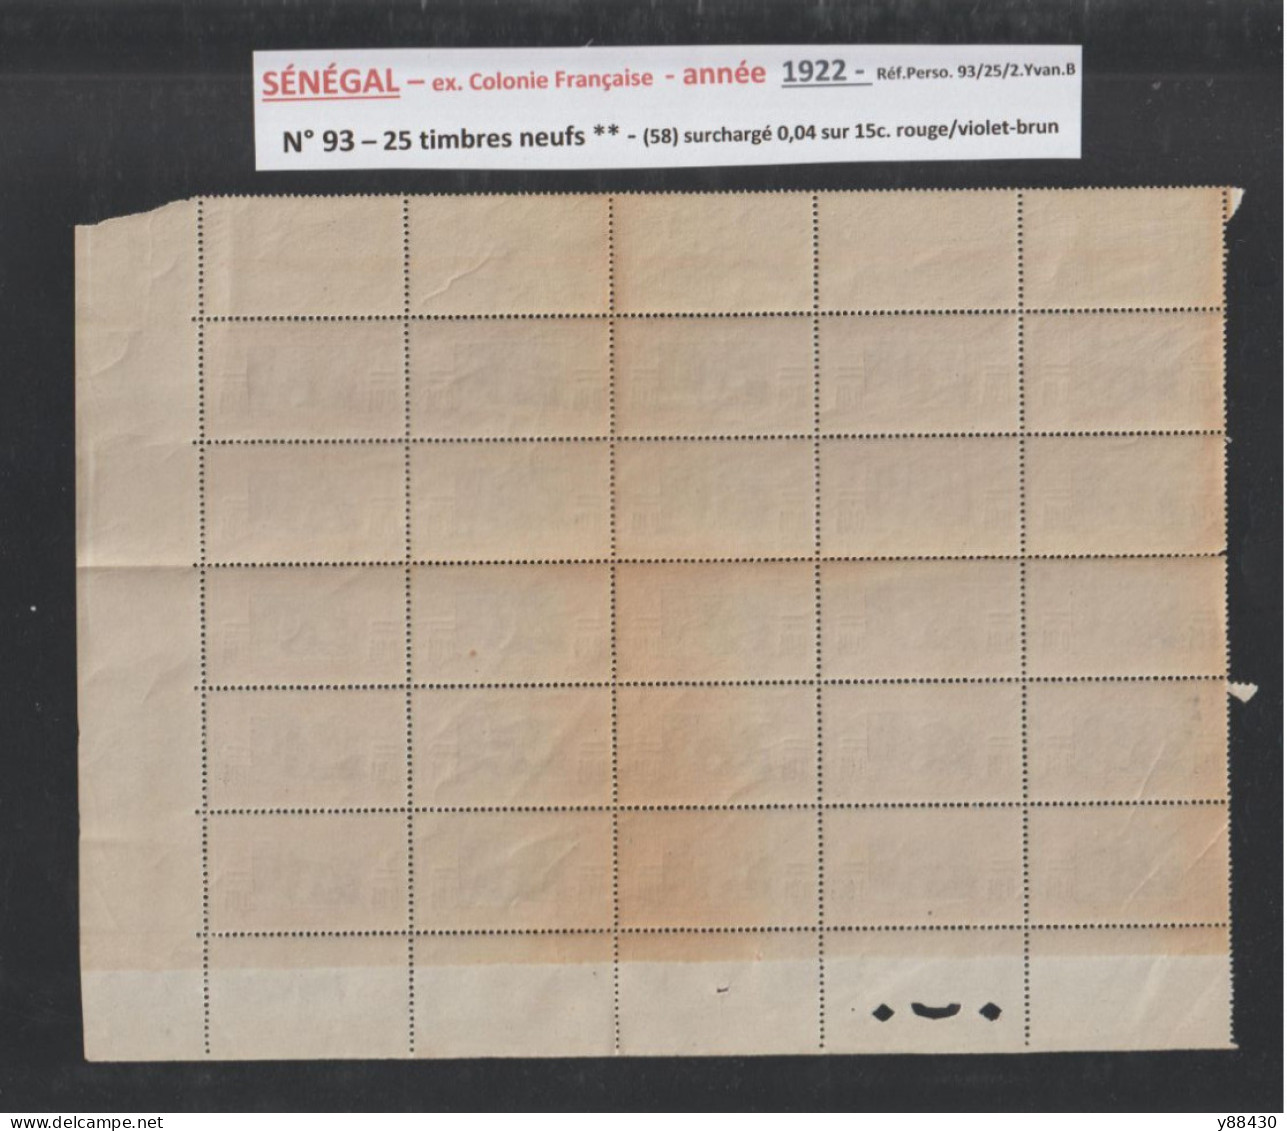 SÉNÉGAL - Ex. Colonie Française - - N° 93  De 1922 - (58) - 25 Timbres Neufs **  - Surchargé 0,04 Sur 15c.  - 2 Scan - Unused Stamps